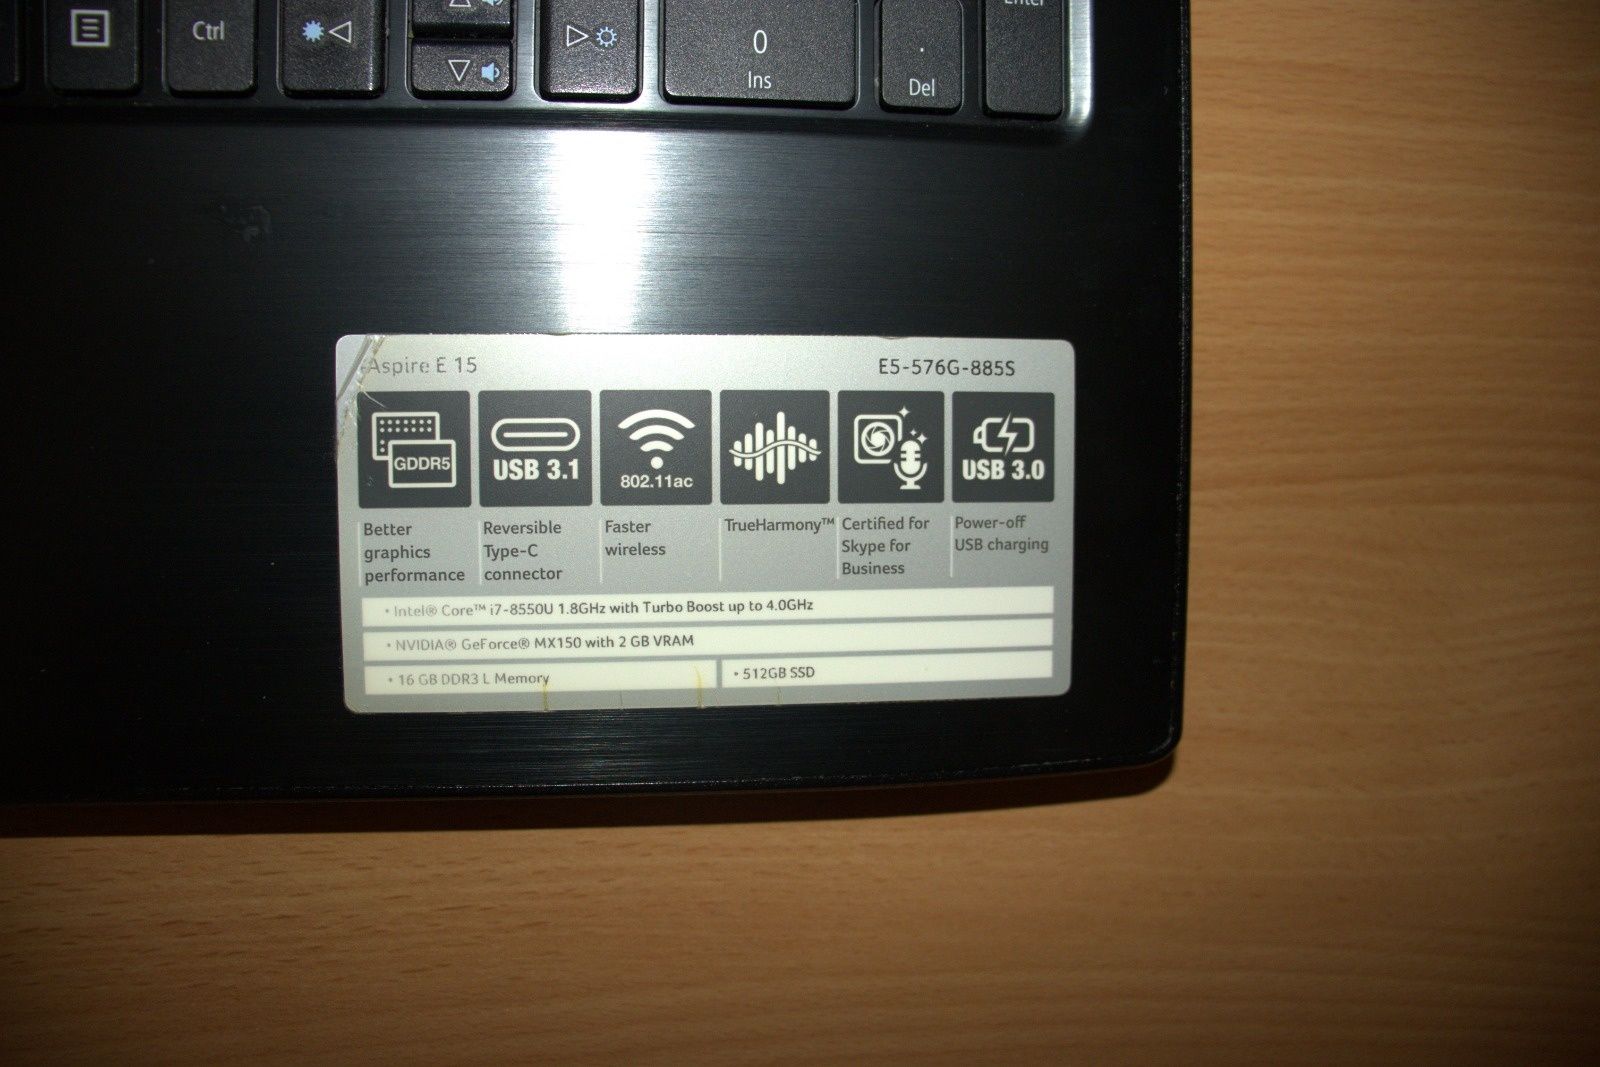 Laptopul, Acer aspire E, E5-576G-885S
Pretul e n